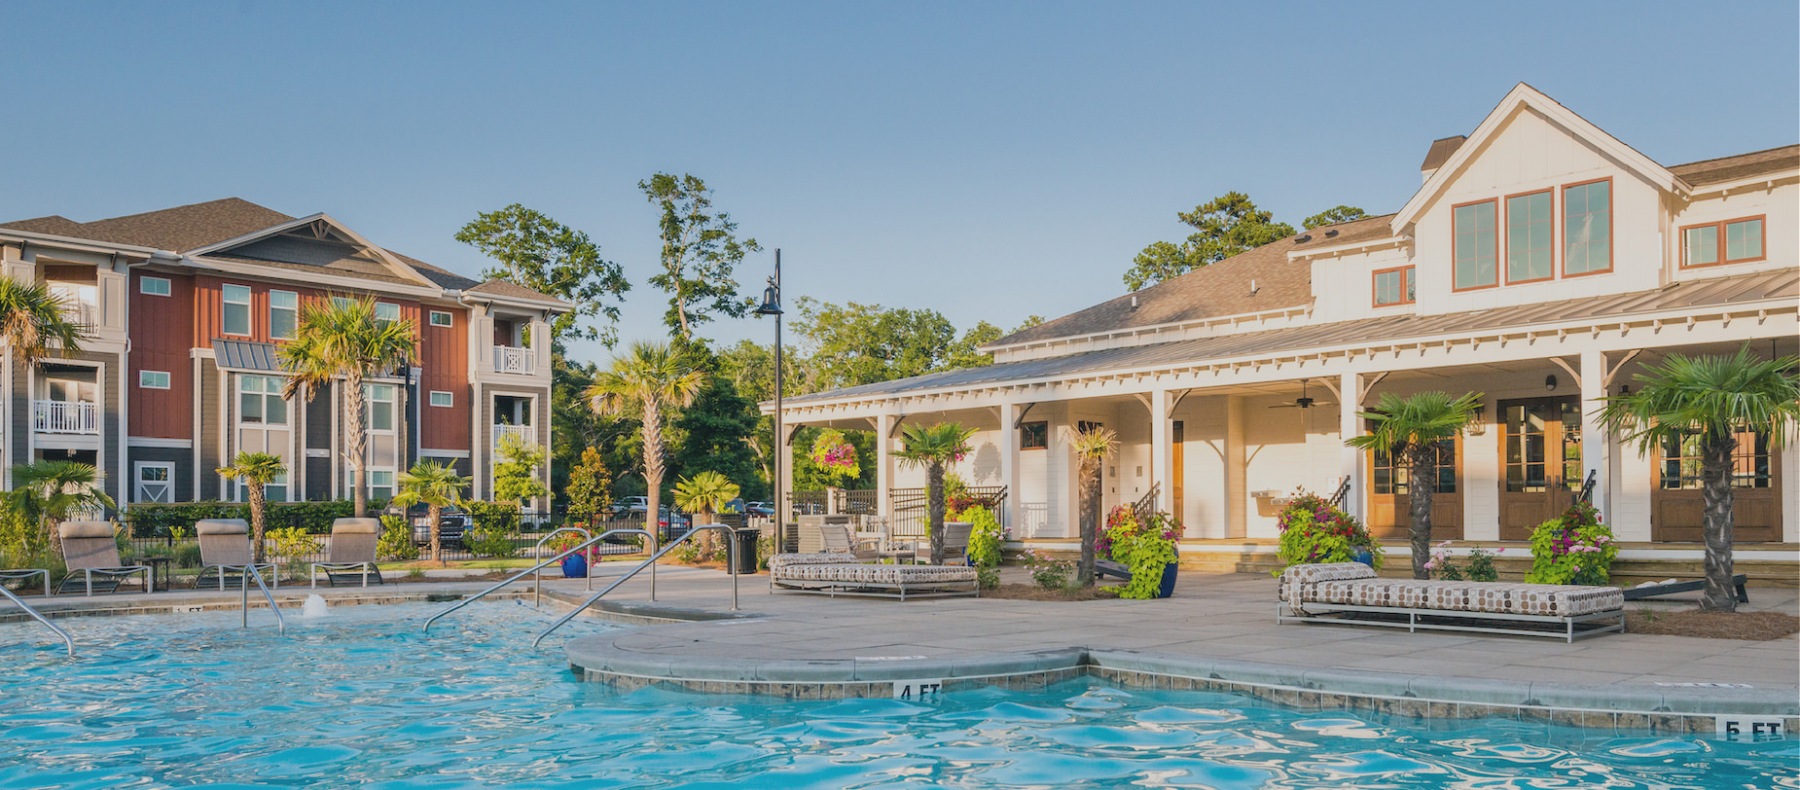 Resort Inspired Pool 